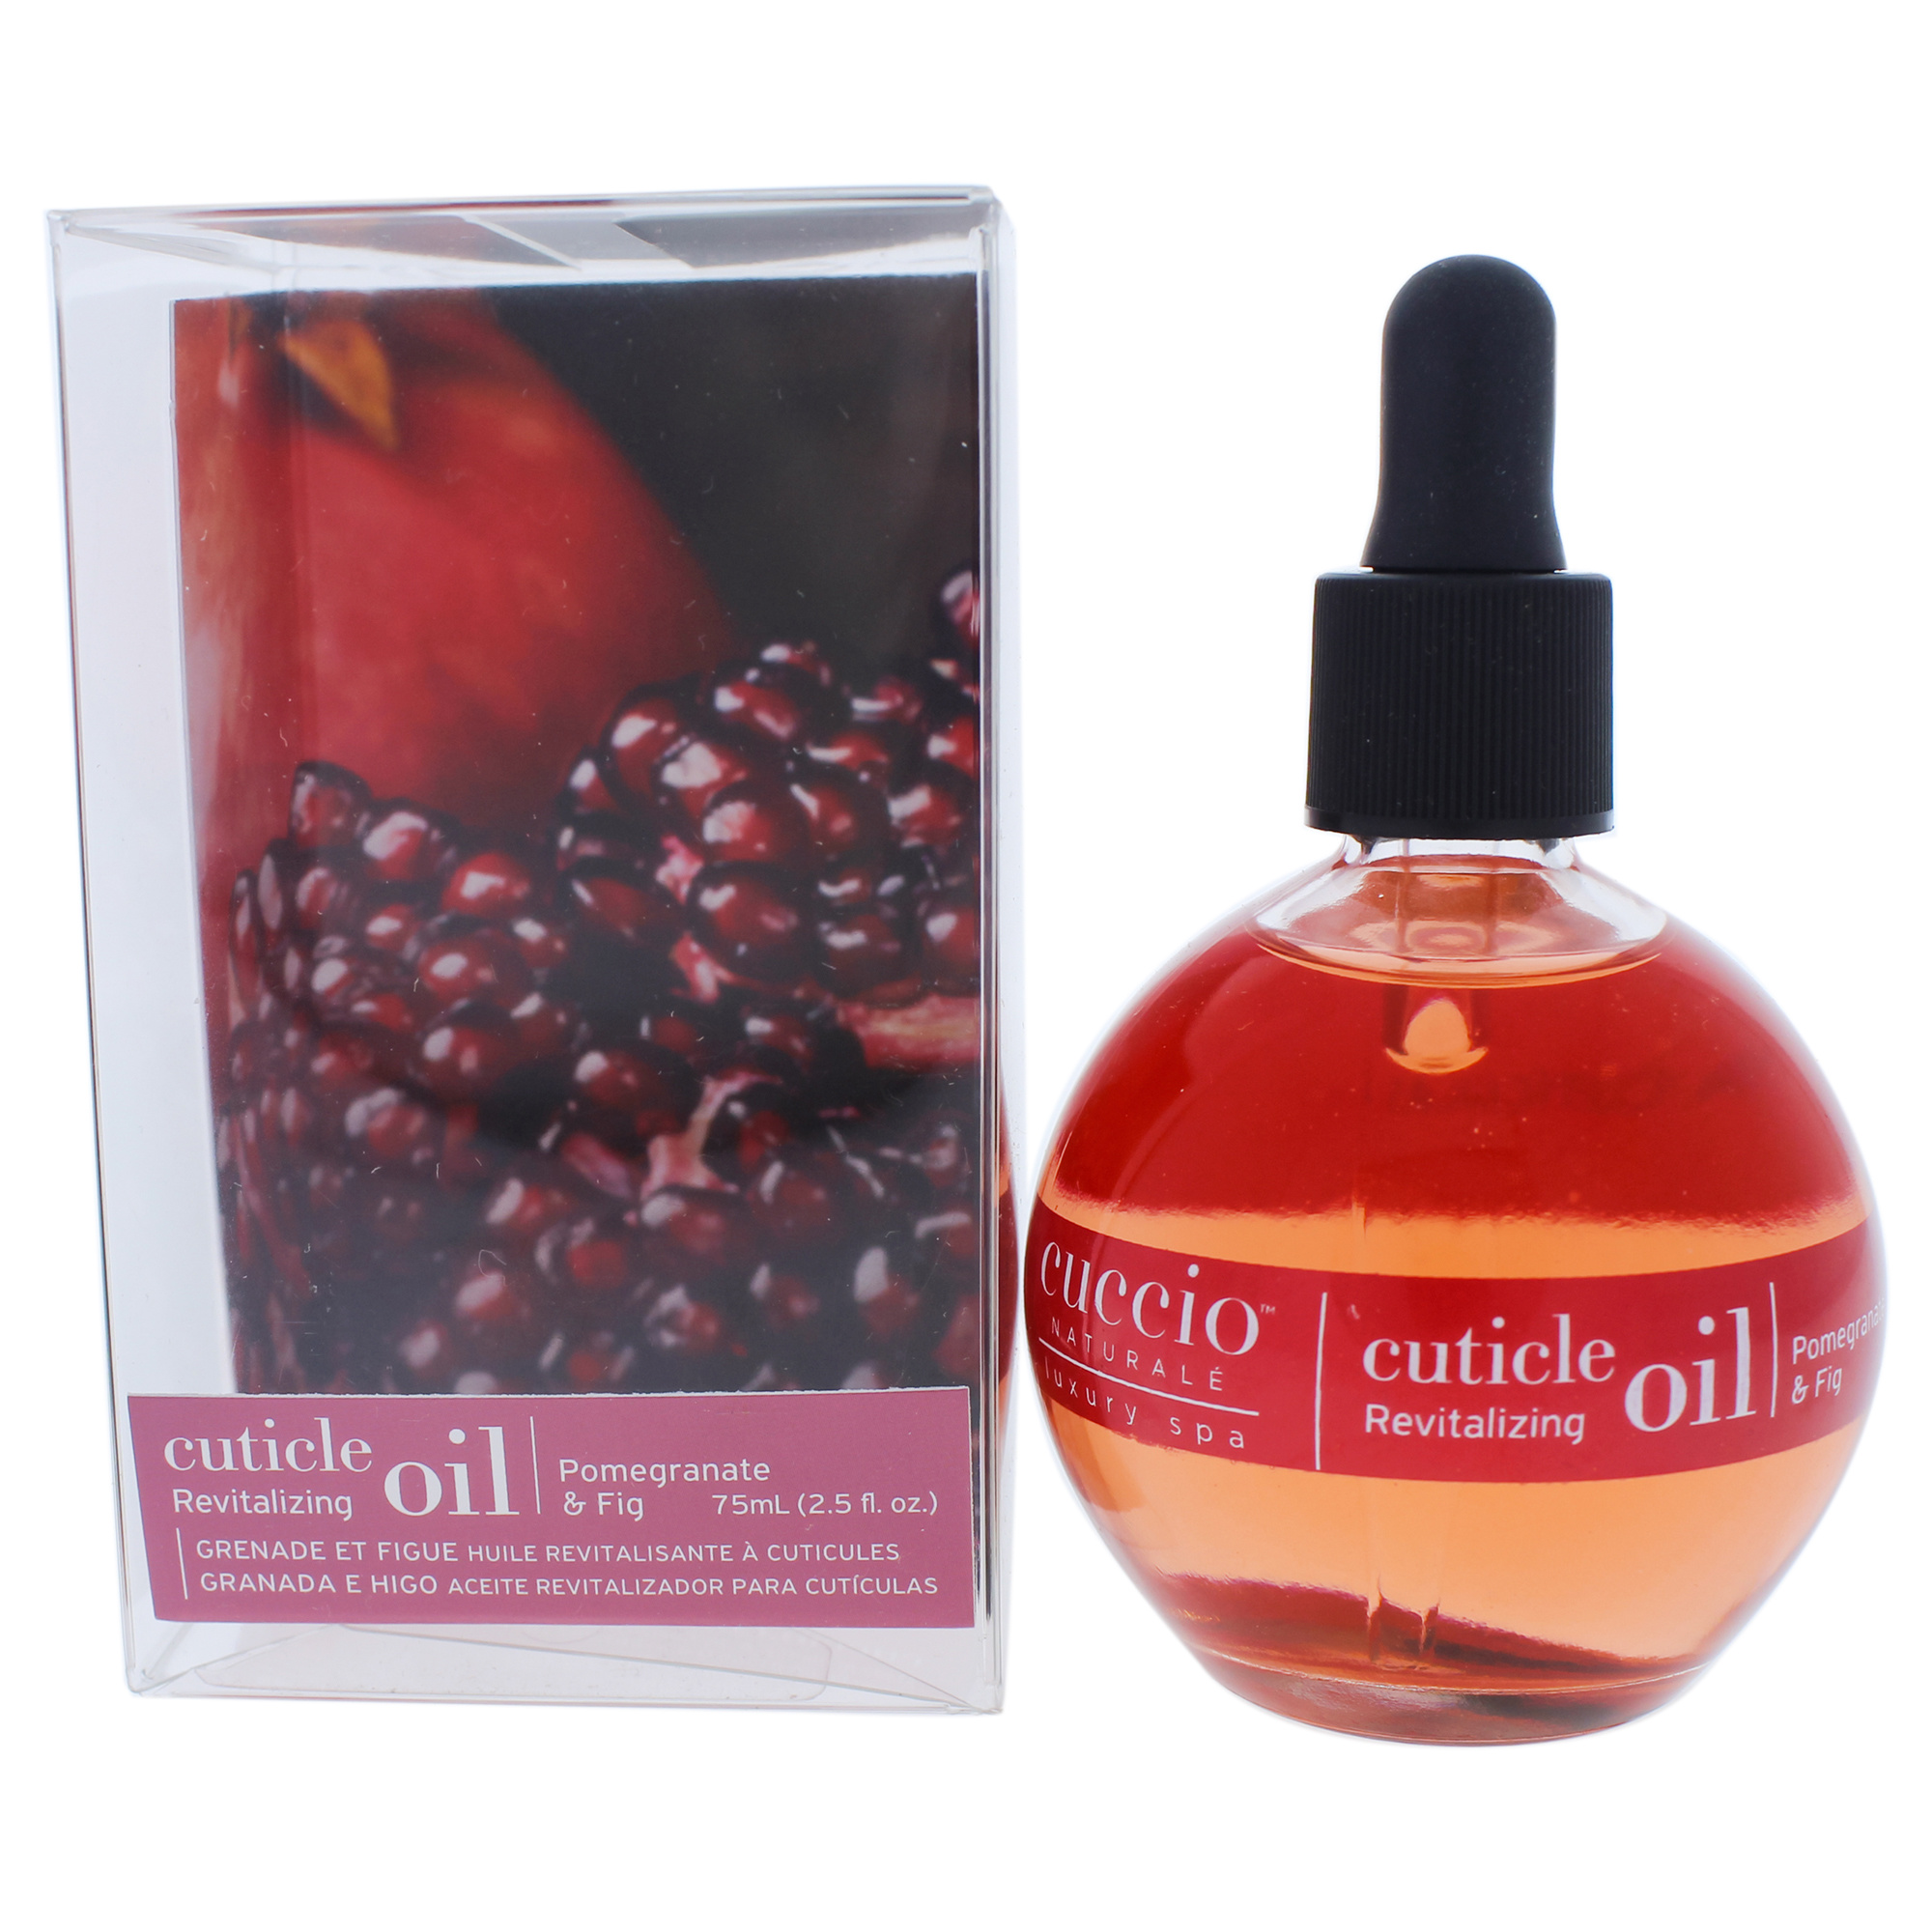 CUCCIO NATURALE cuticle Revitalizing Oil - Pomegranate and Fig Manicure by cuccio Naturale for Unisex - 25 oz Oil(D0102H2LE3g)